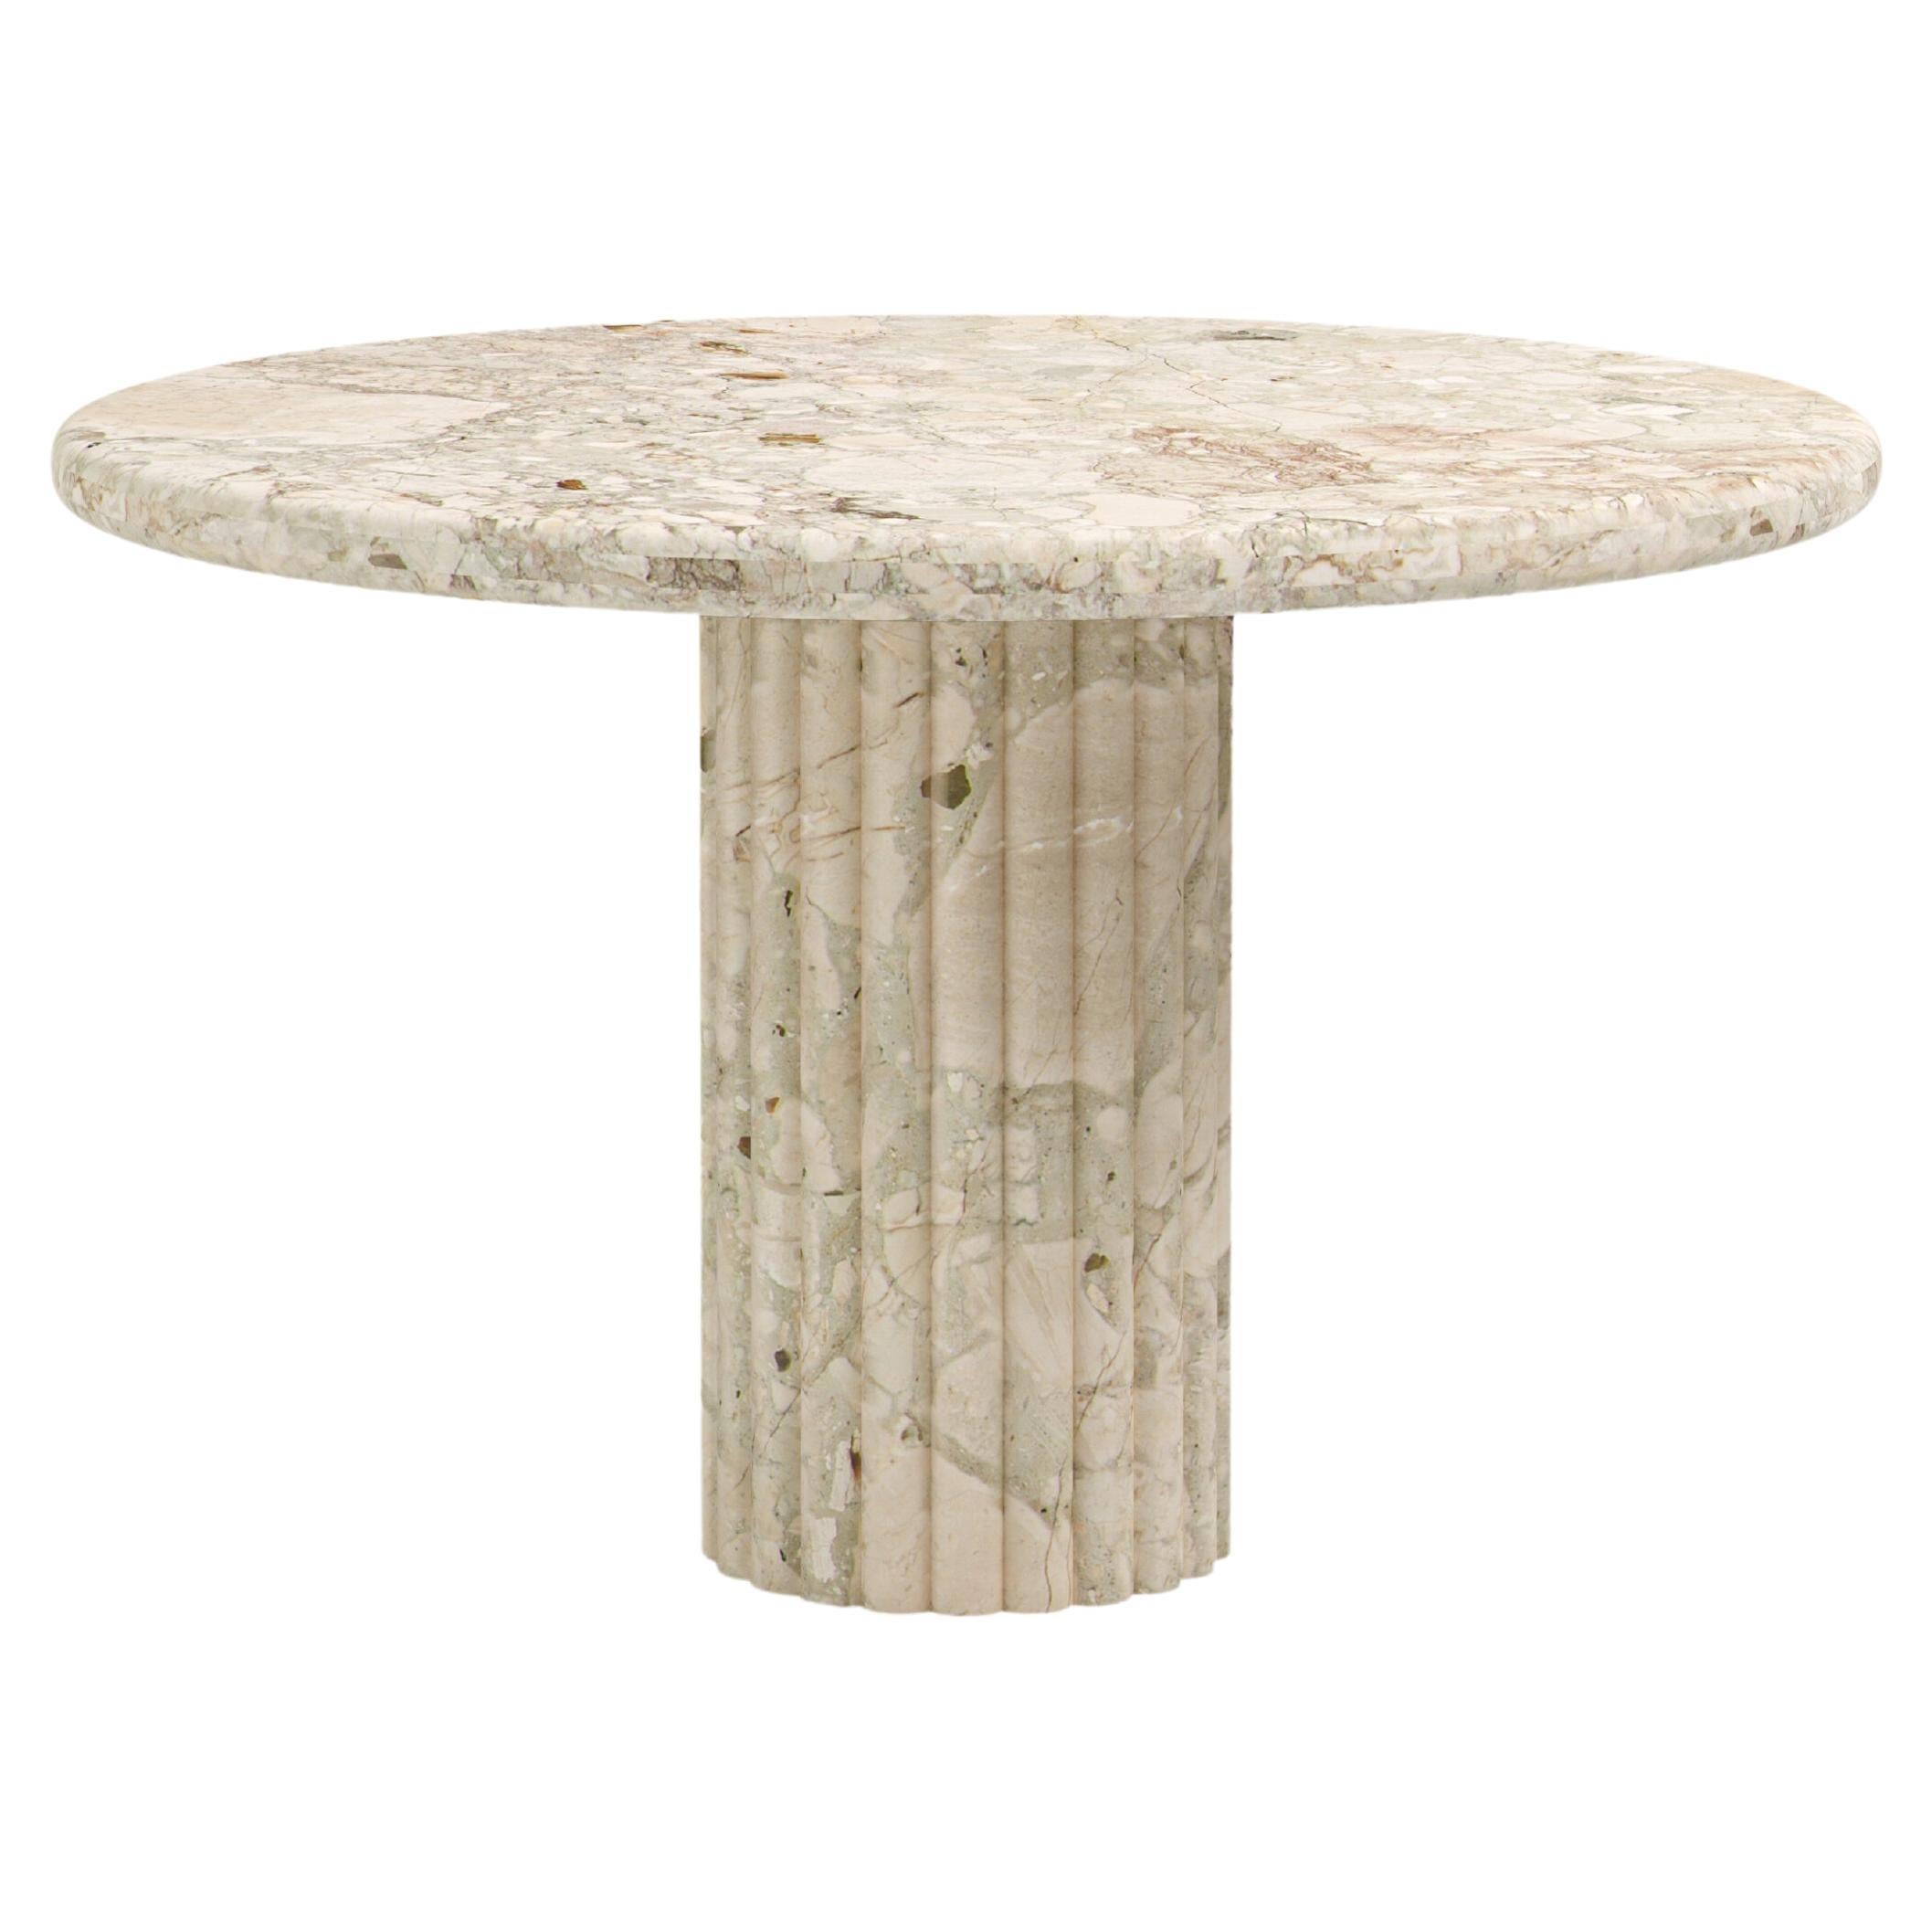 FORM(LA) Fluta Round Dining Table 48”L x 48”W x 30”H Breccia Rosa Marble